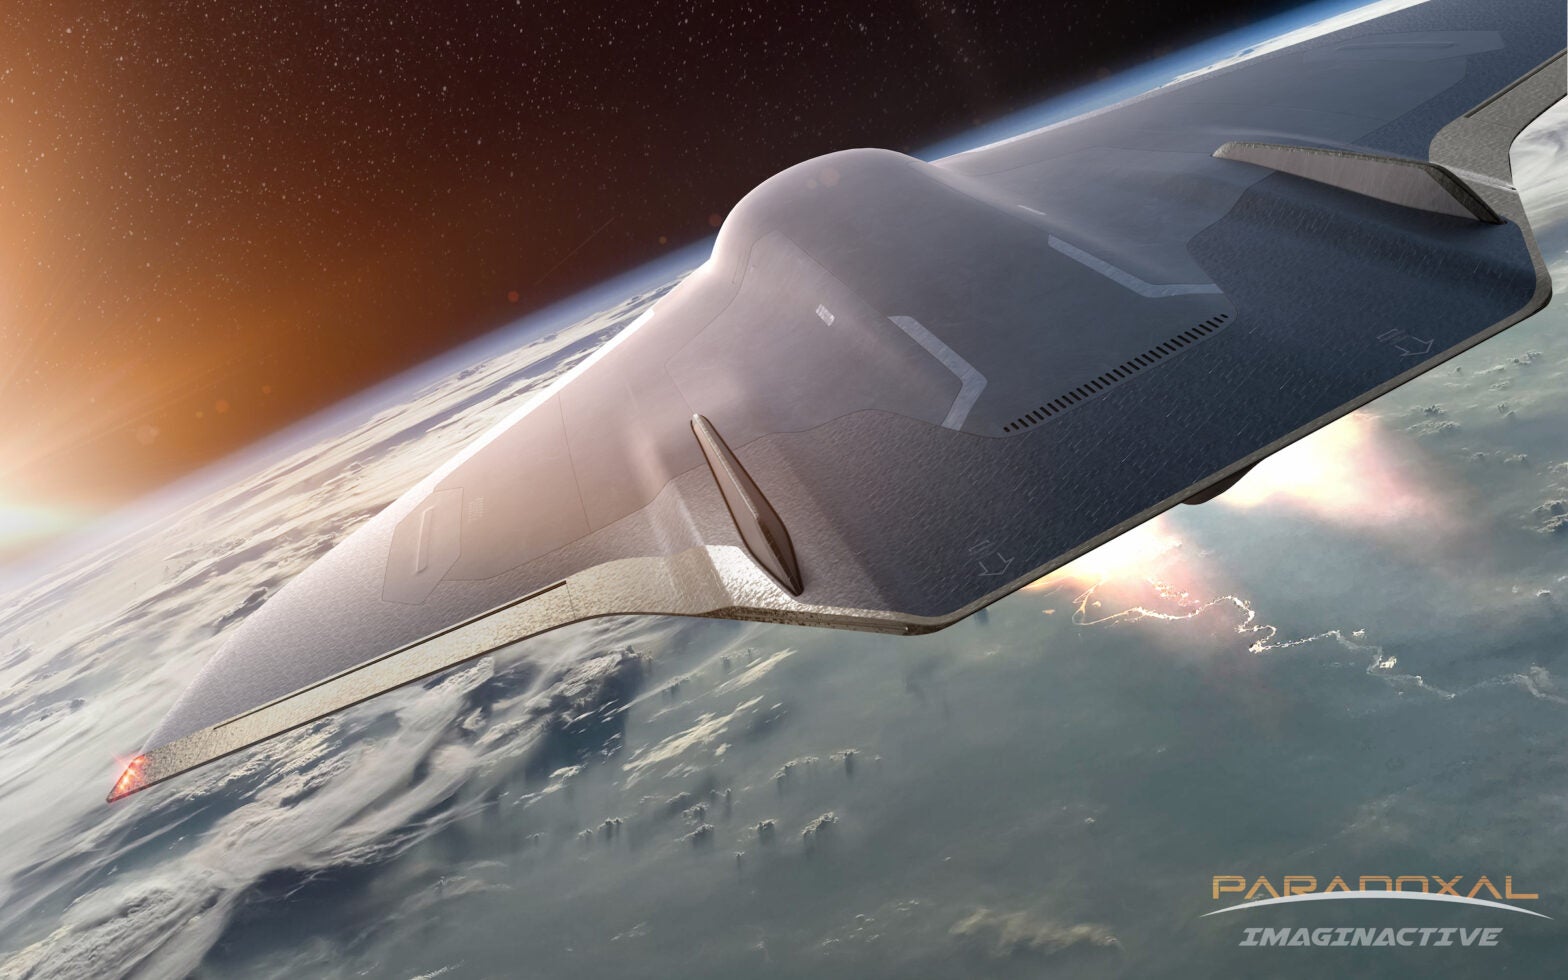 Imaginactive Announces Hypersonic Jet Concept